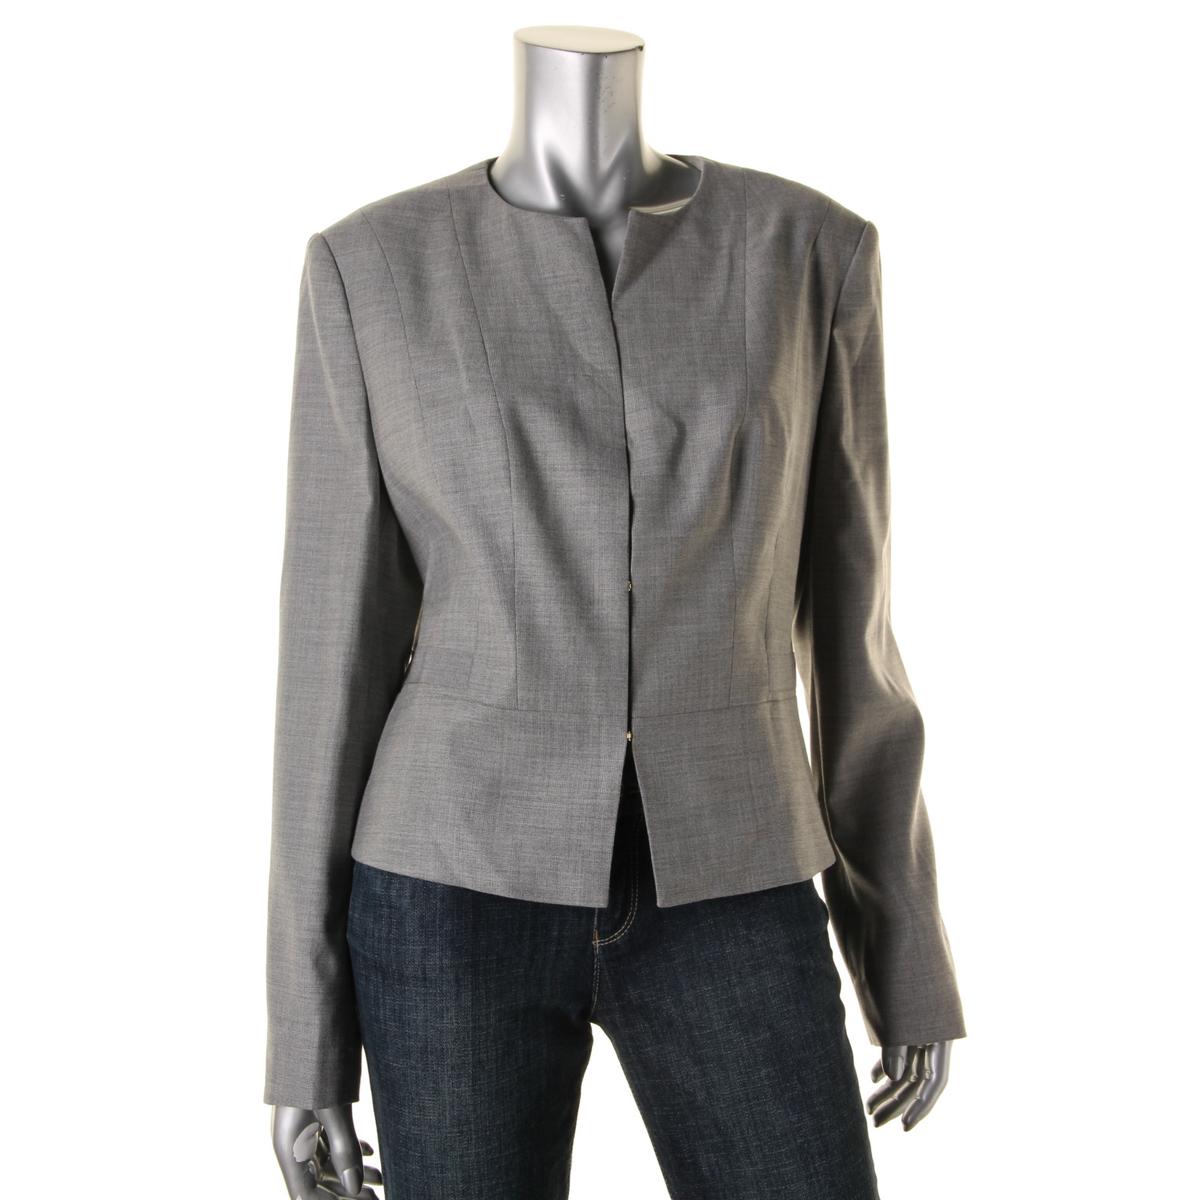 Women&39s Blazers Jackets &amp Vests: Wool - Sears